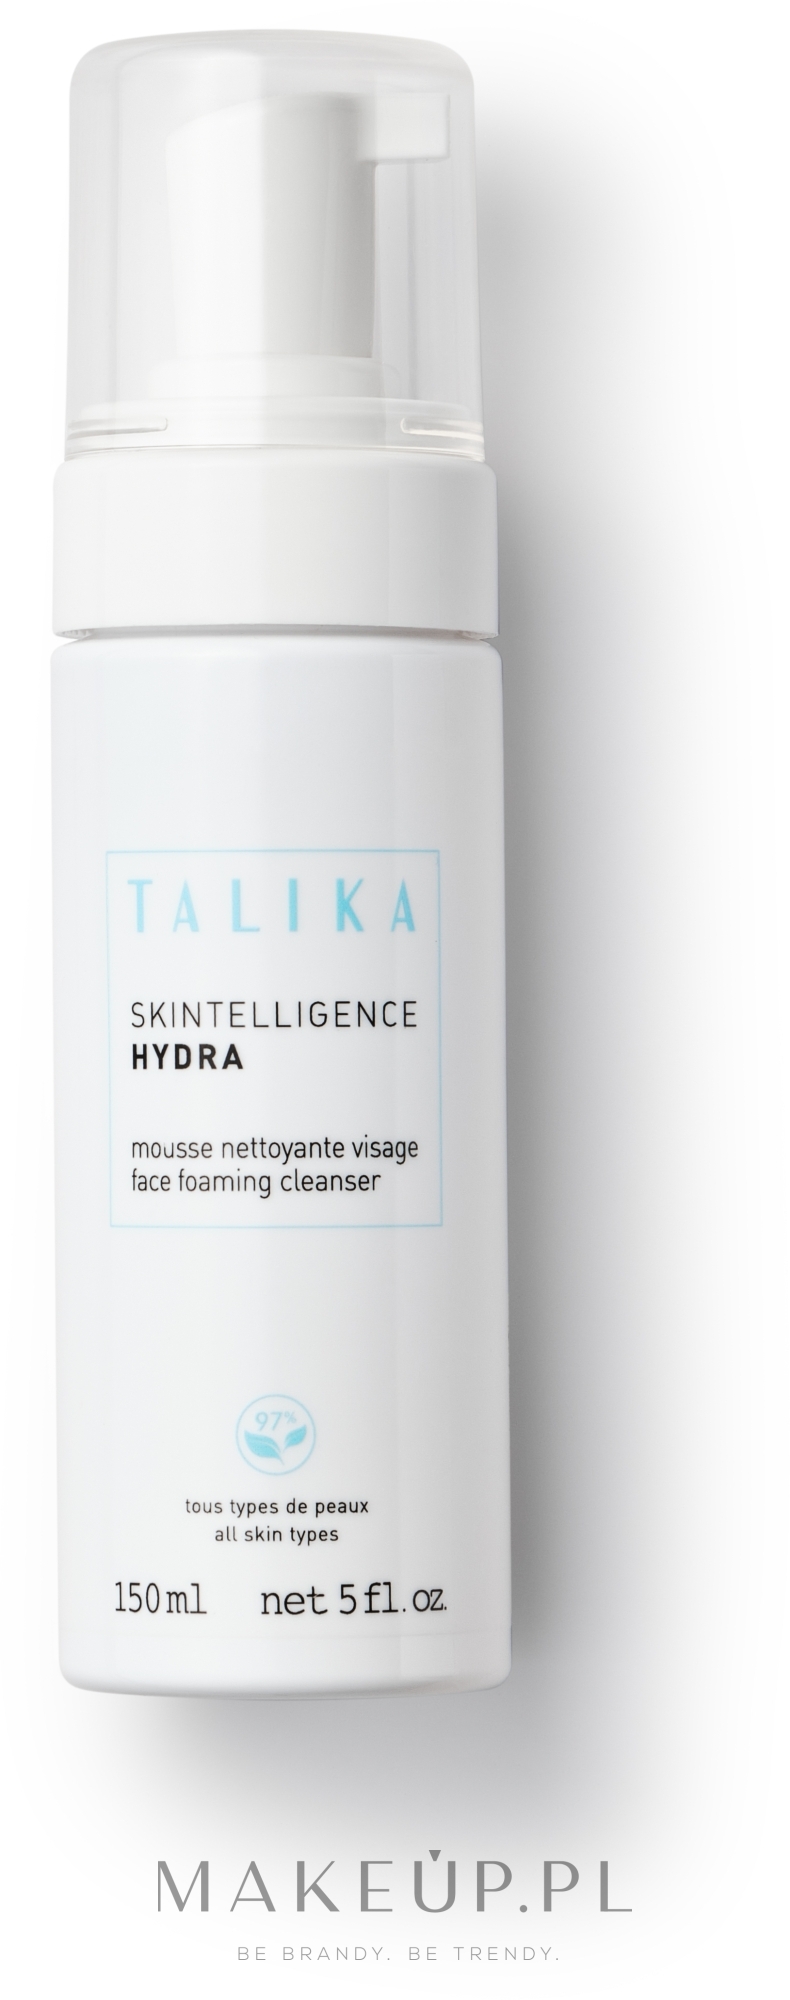 Nawilżająca pianka do mycia twarzy - Talika Skintelligence Hydra Face Foaming Cleanser — Zdjęcie 150 ml